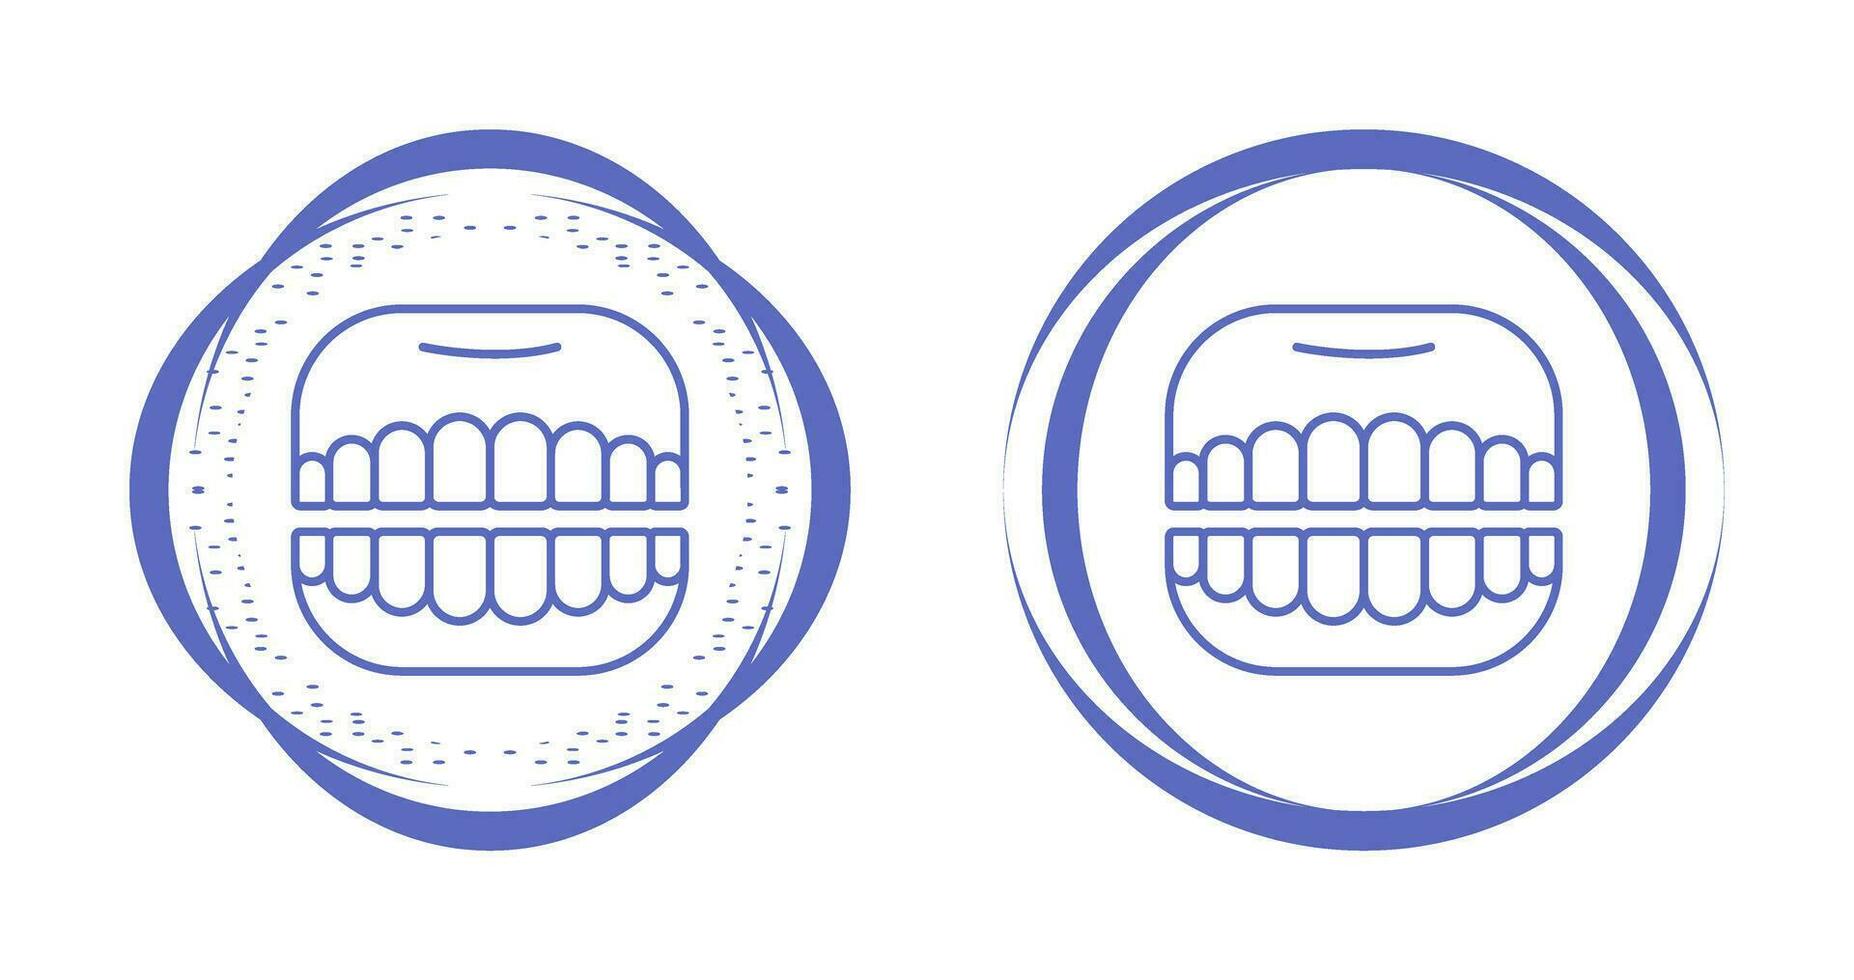 tandprotes vektor ikon